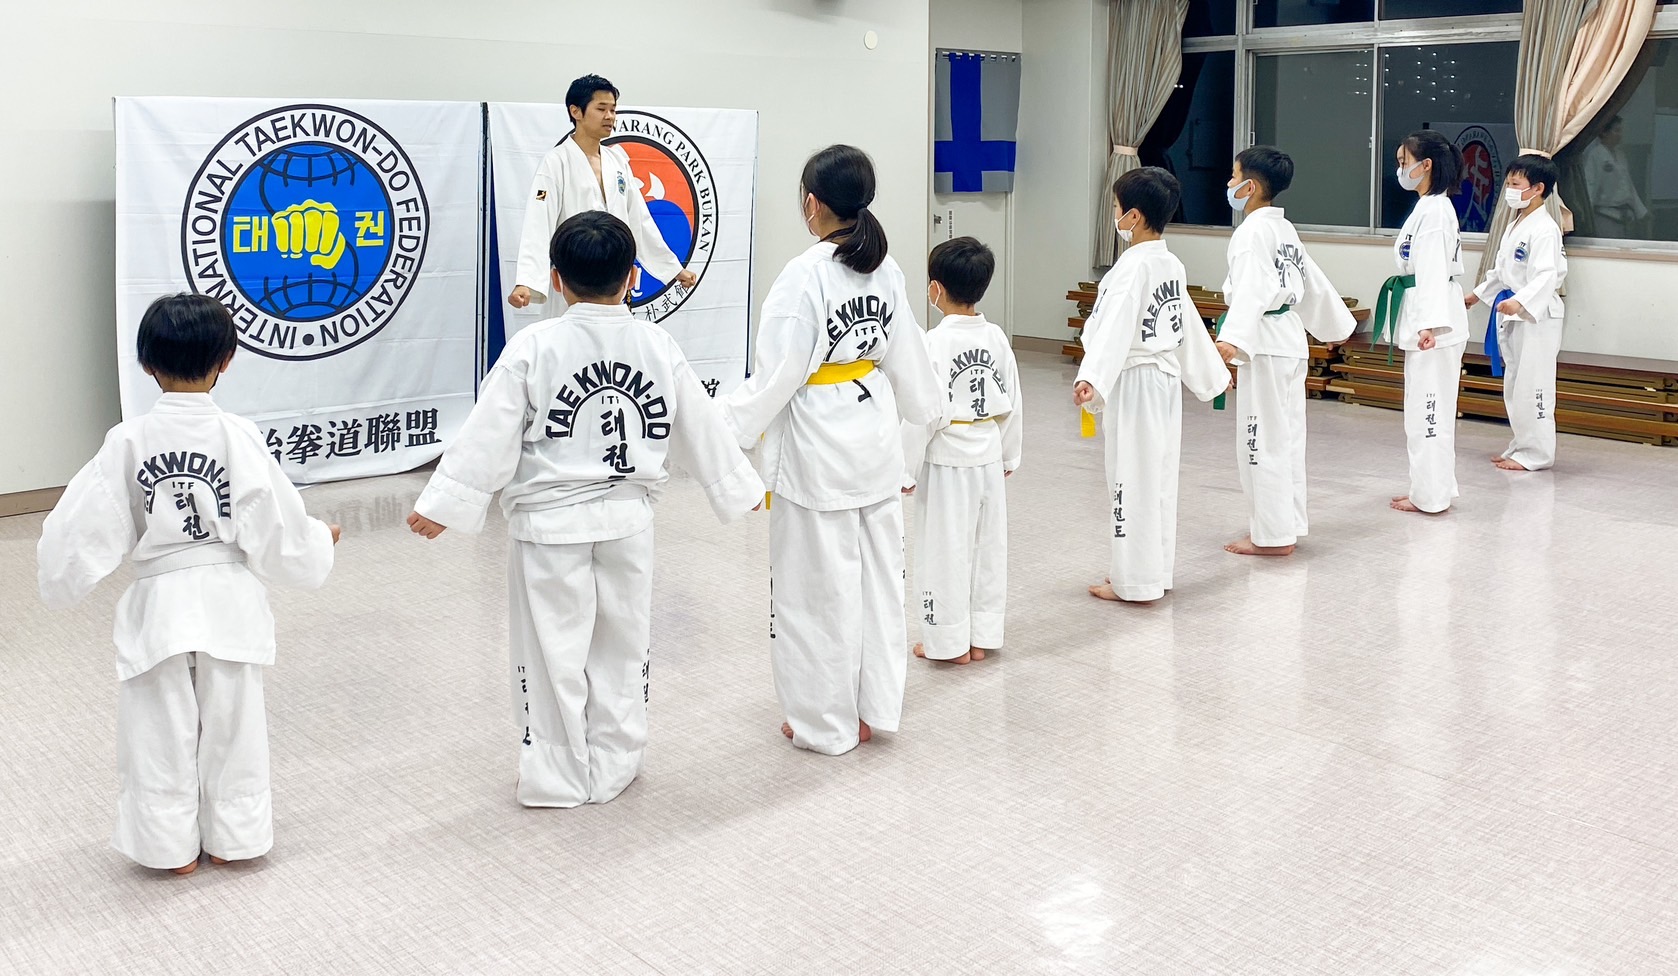 taekwondo-urawa (7)